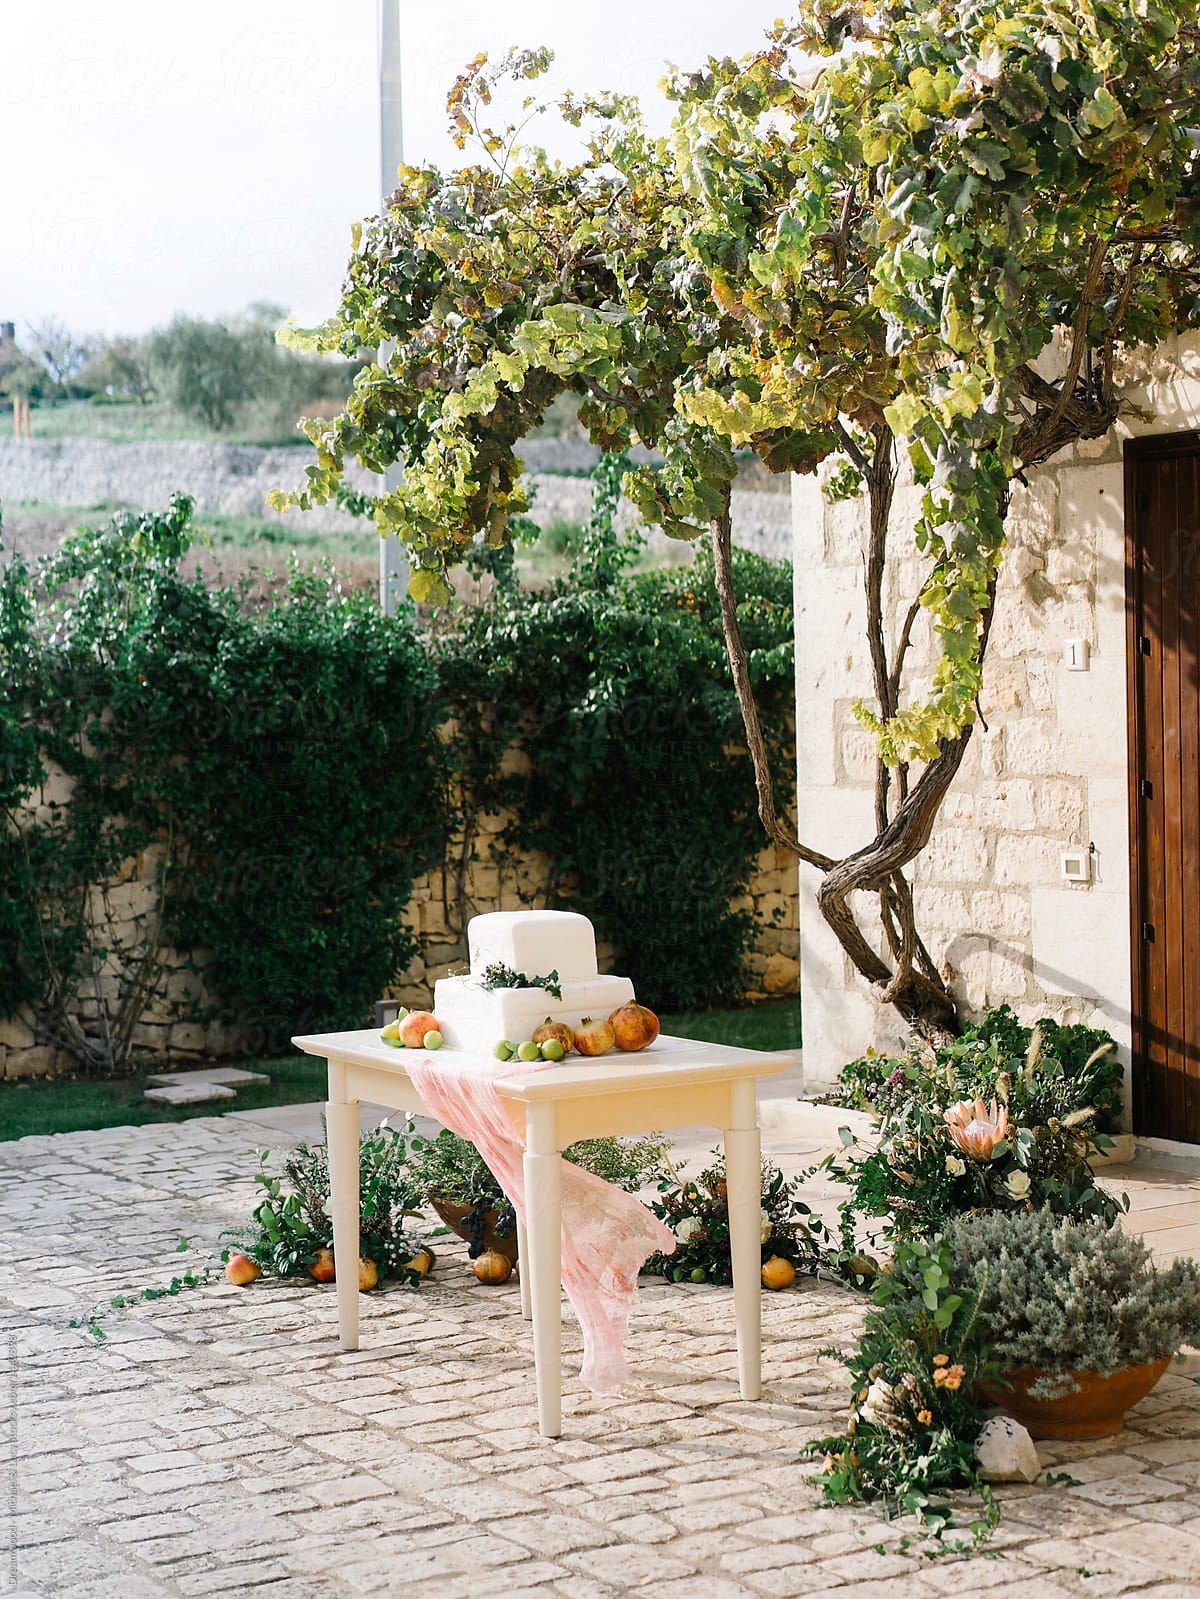 Small table ith wedding cake in garden